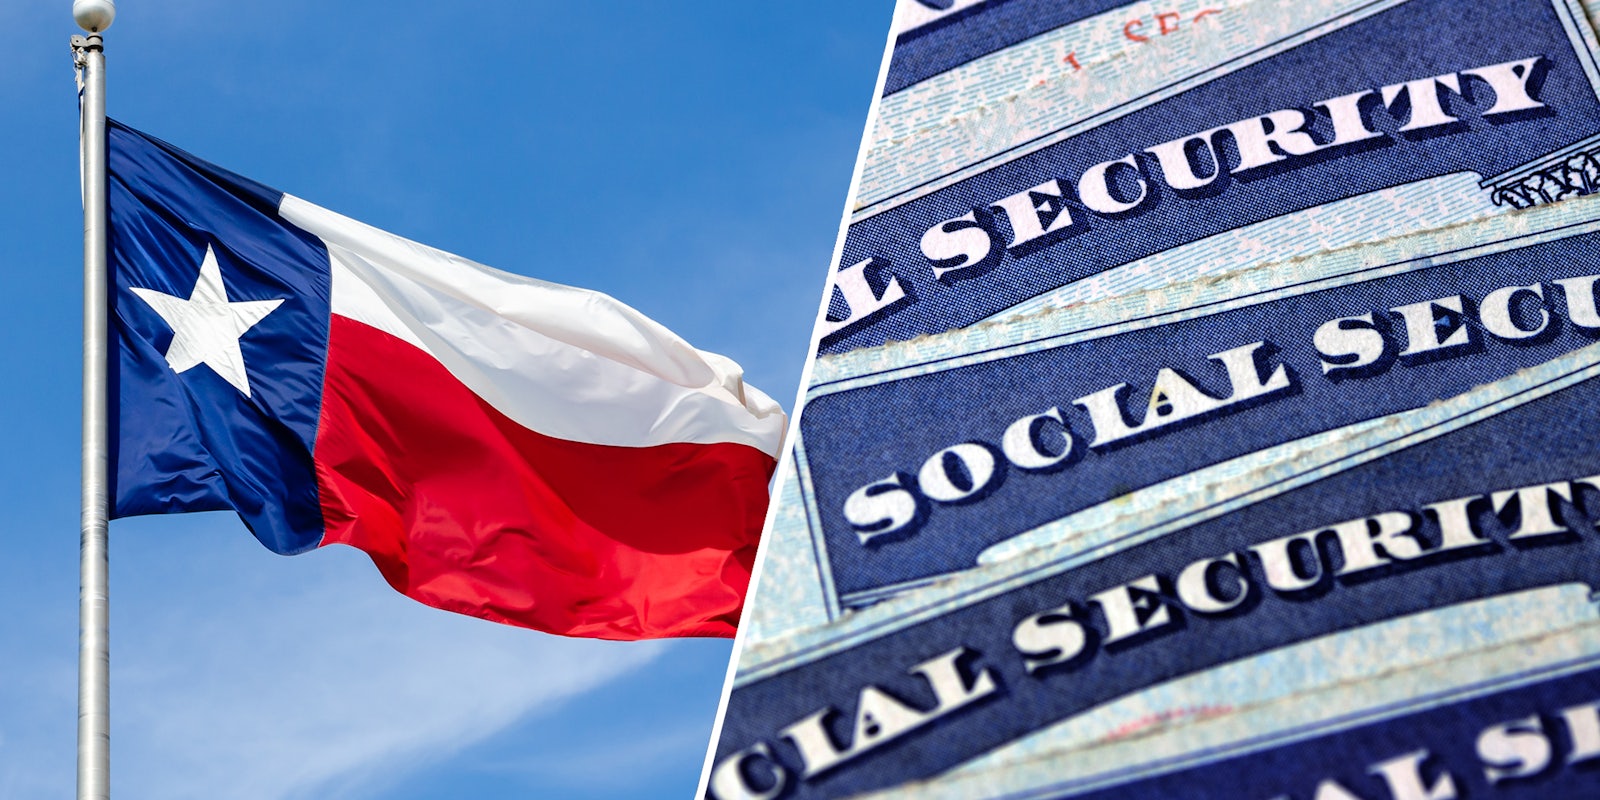 Texas Flag(l), Social Security cards(r)